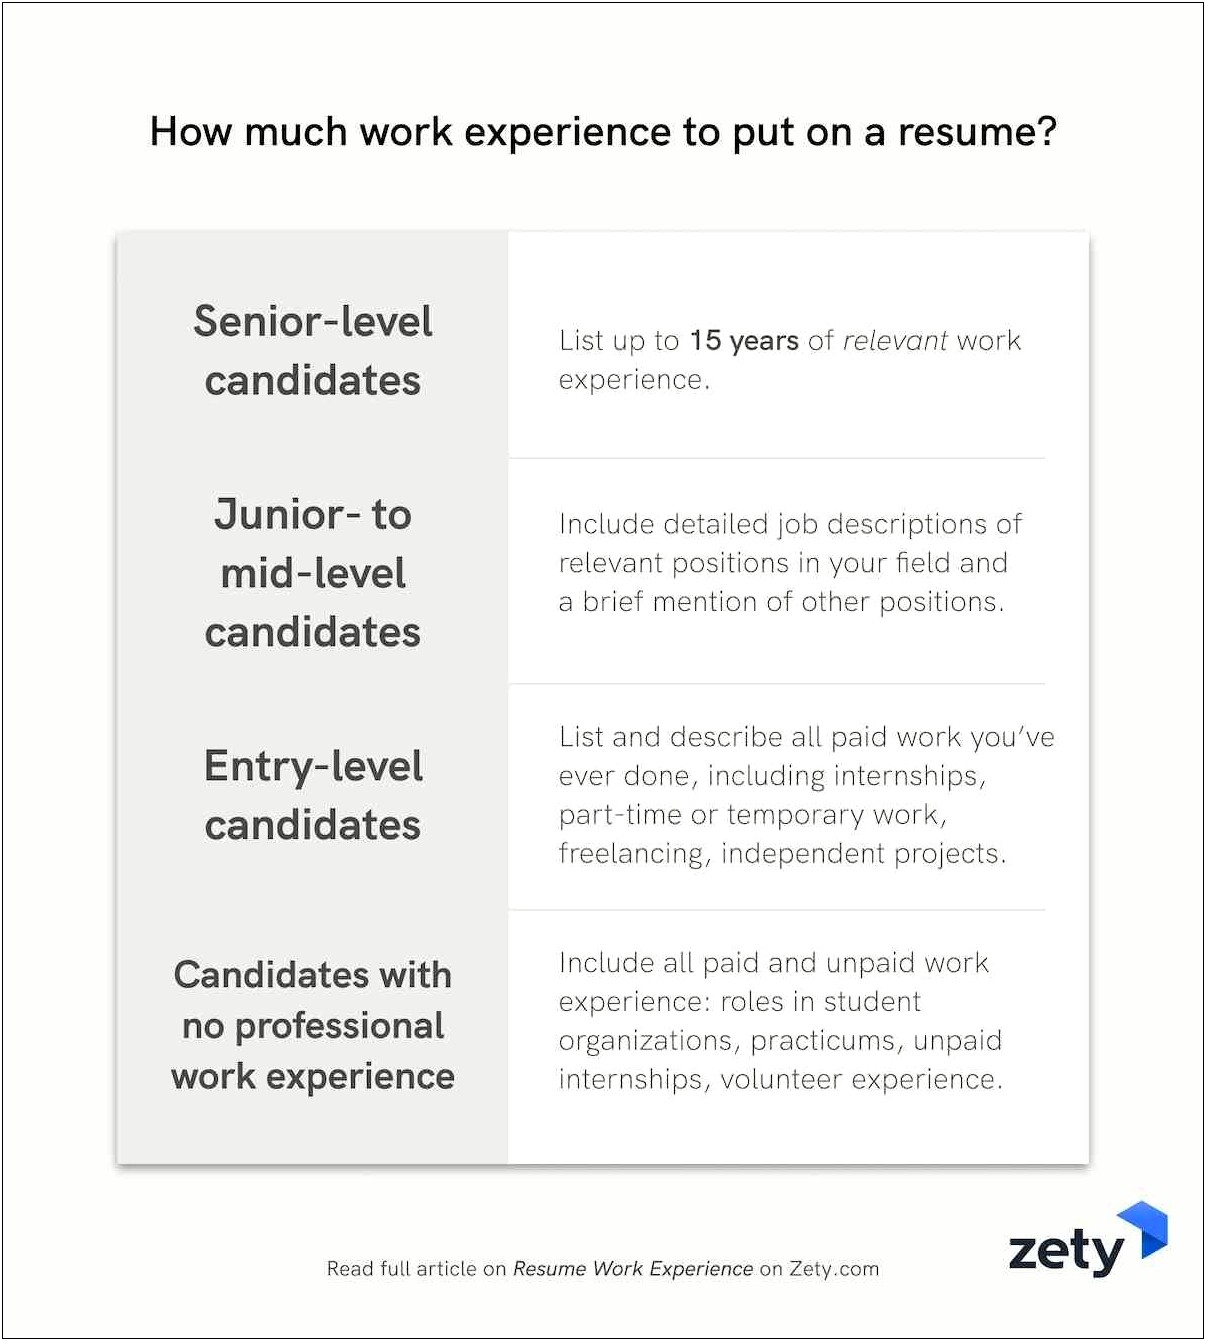 Compare My Resume To Job Description